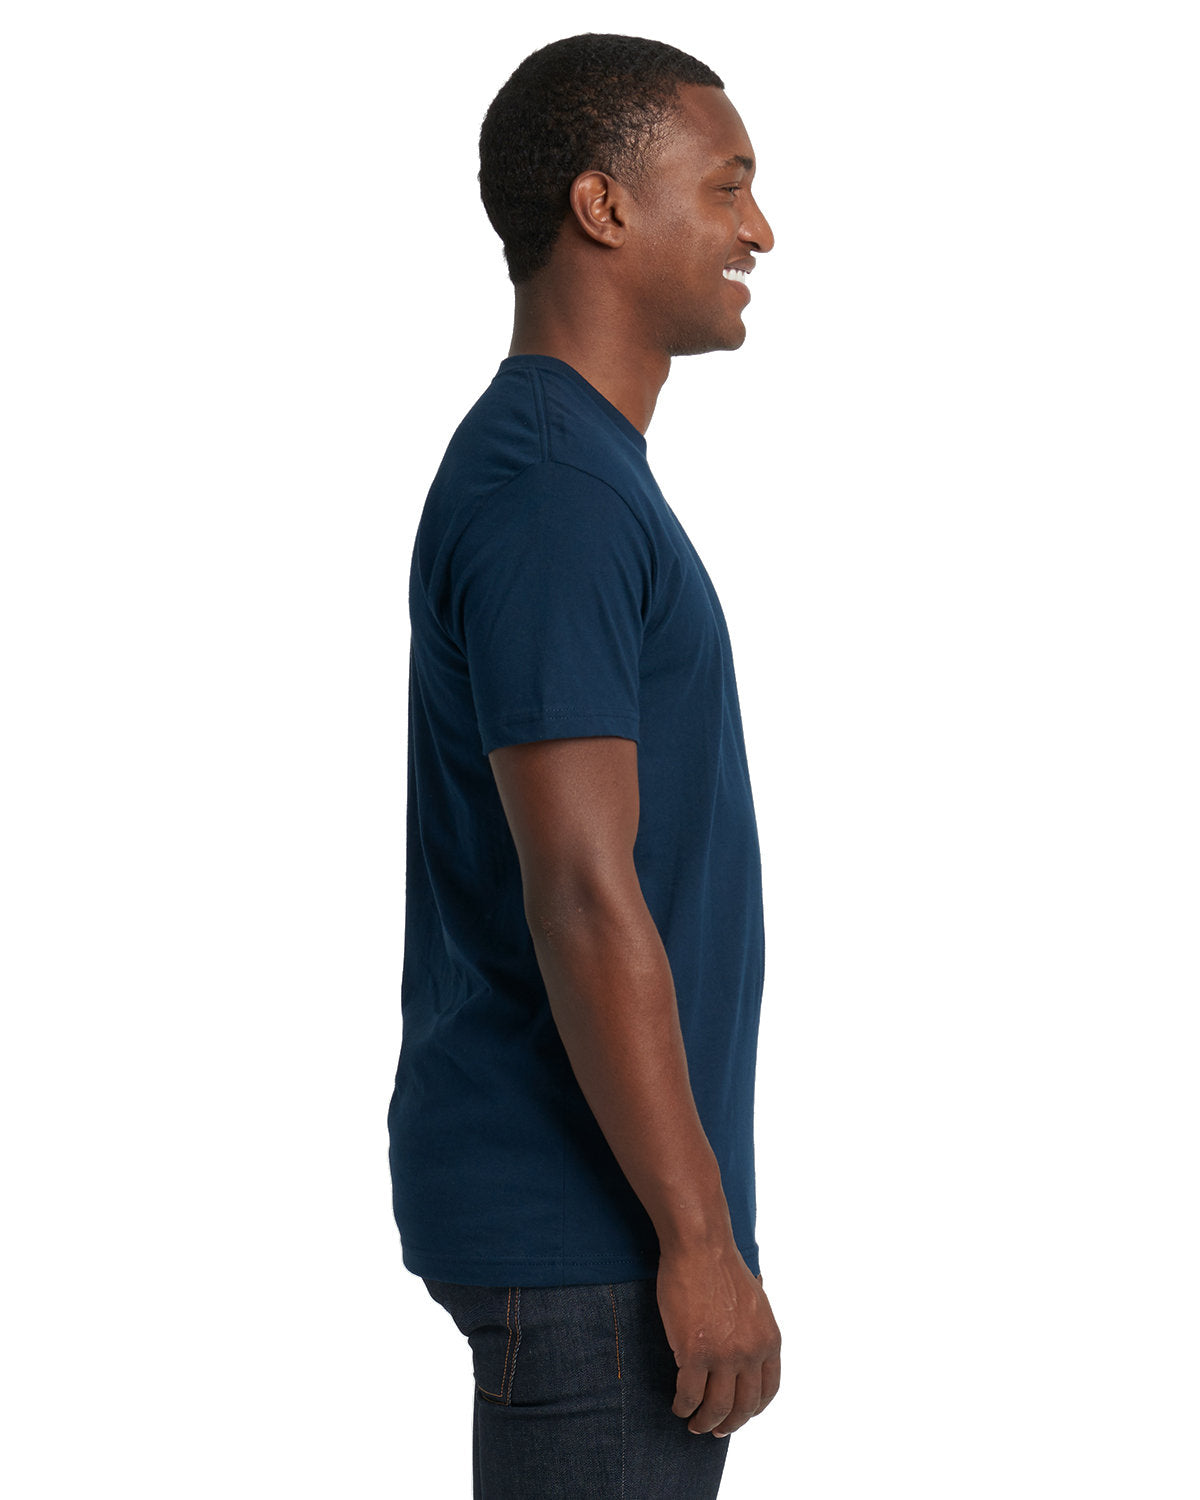 Next Level 3600: Unisex Cotton T-Shirt